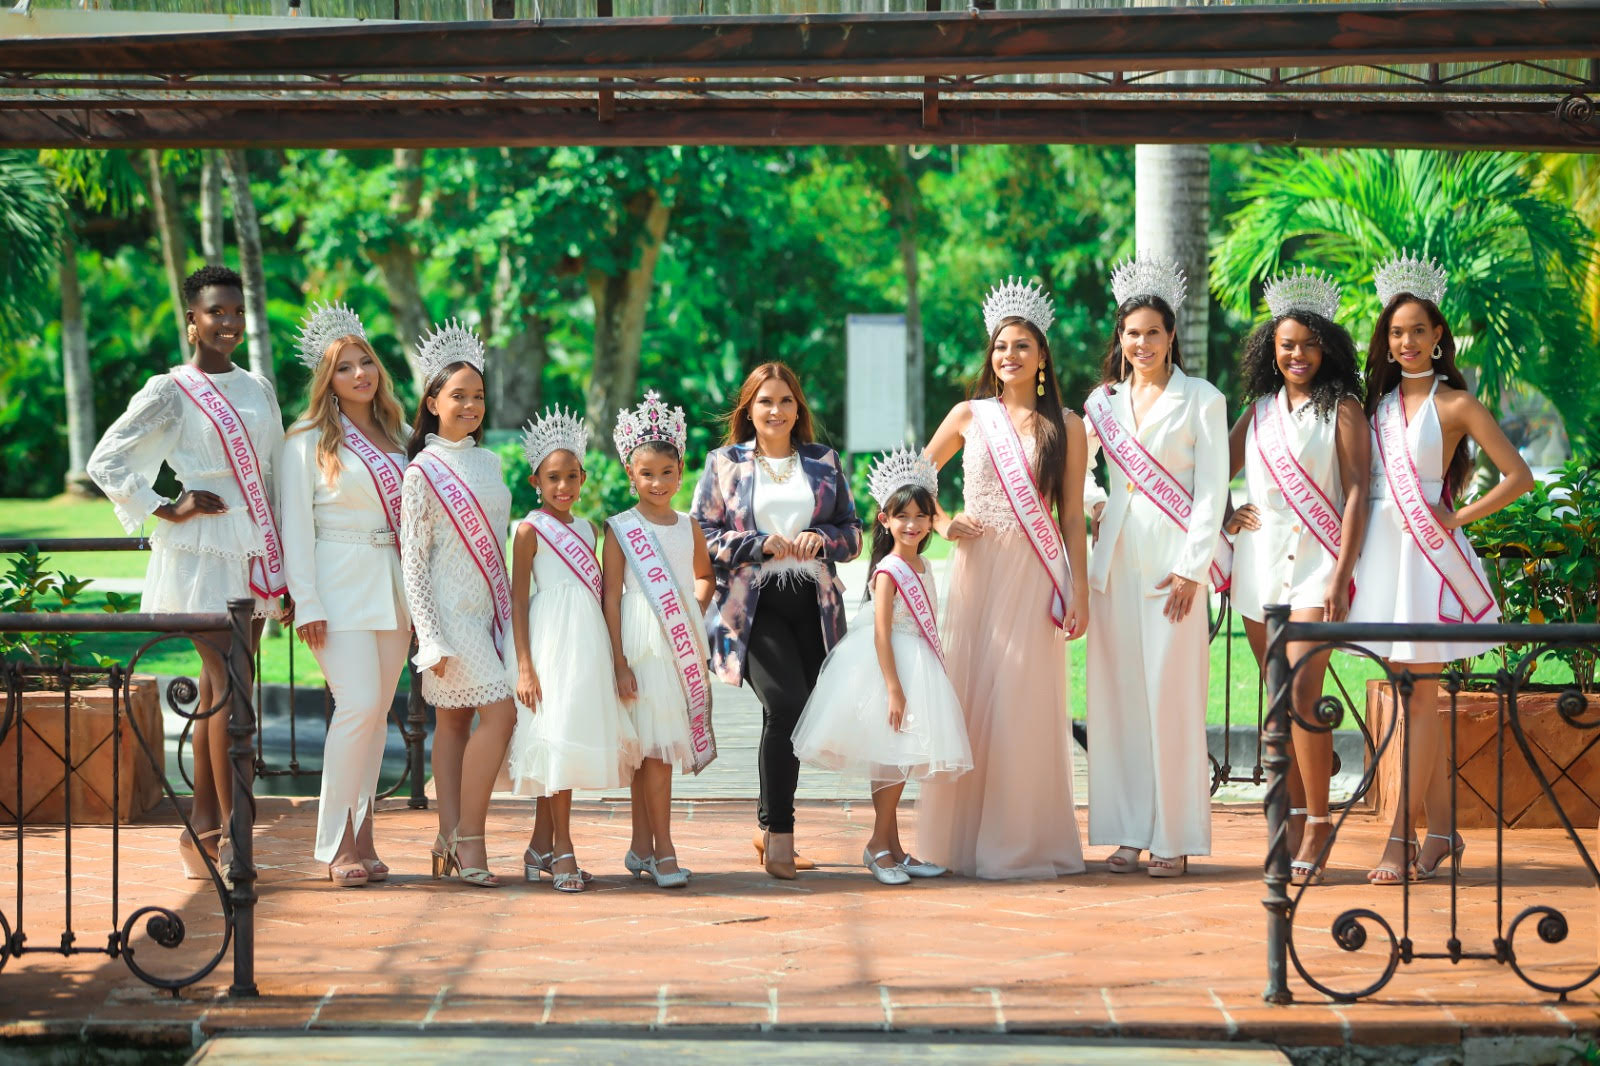 El Certamen de Belleza Internacional celebró su edición 2022 en Punta Cana, República Dominicana